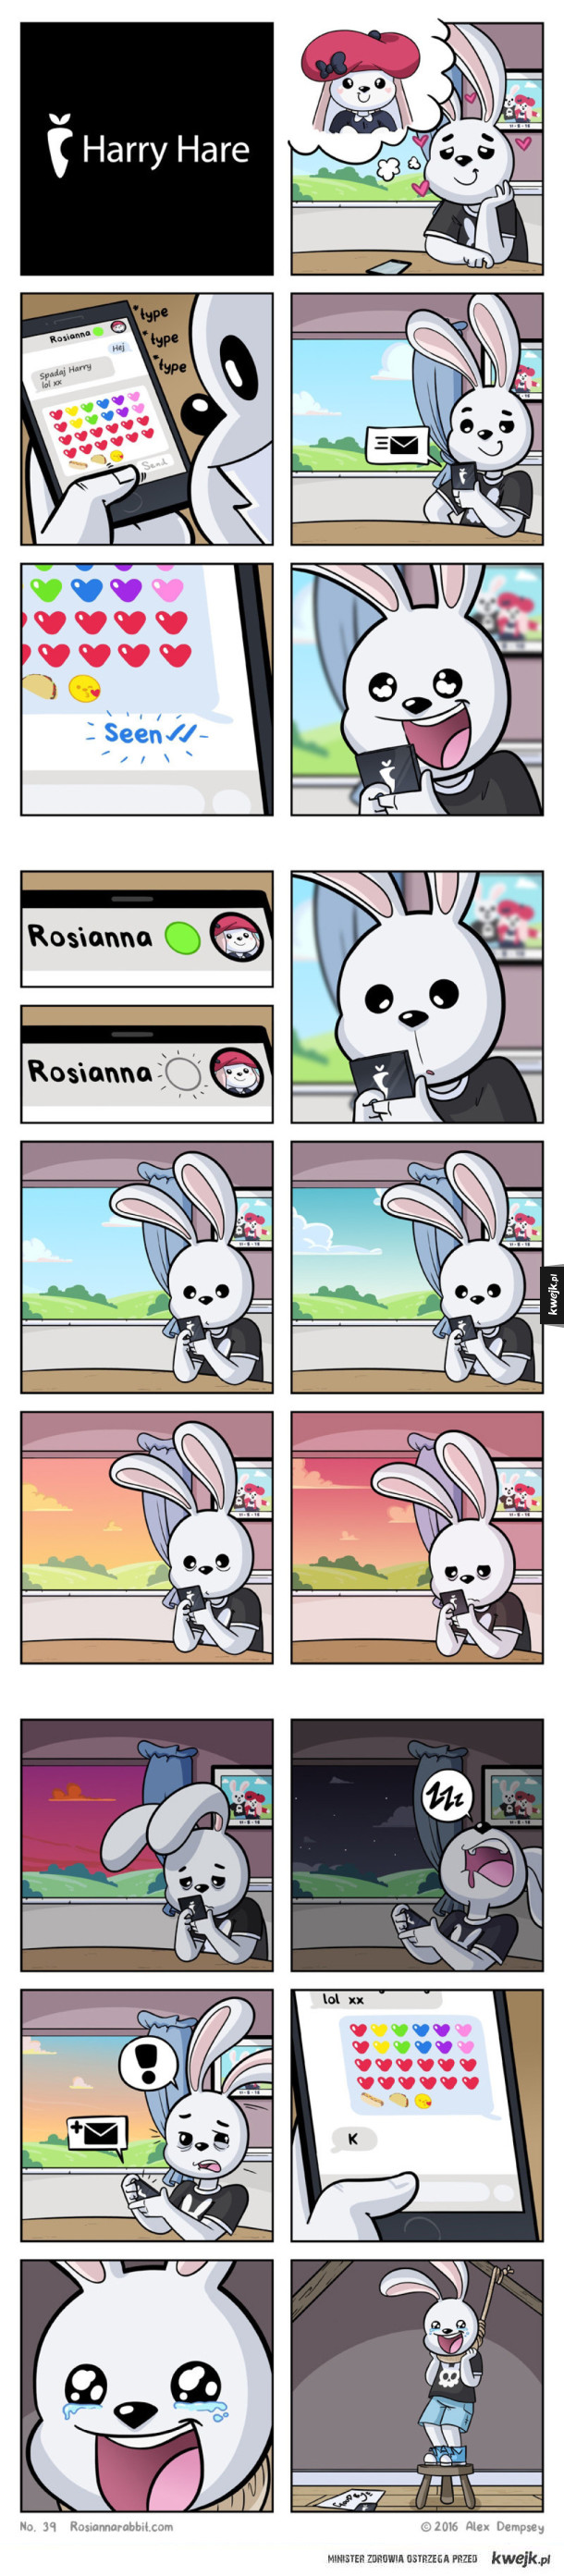 Rosianna Rabbit